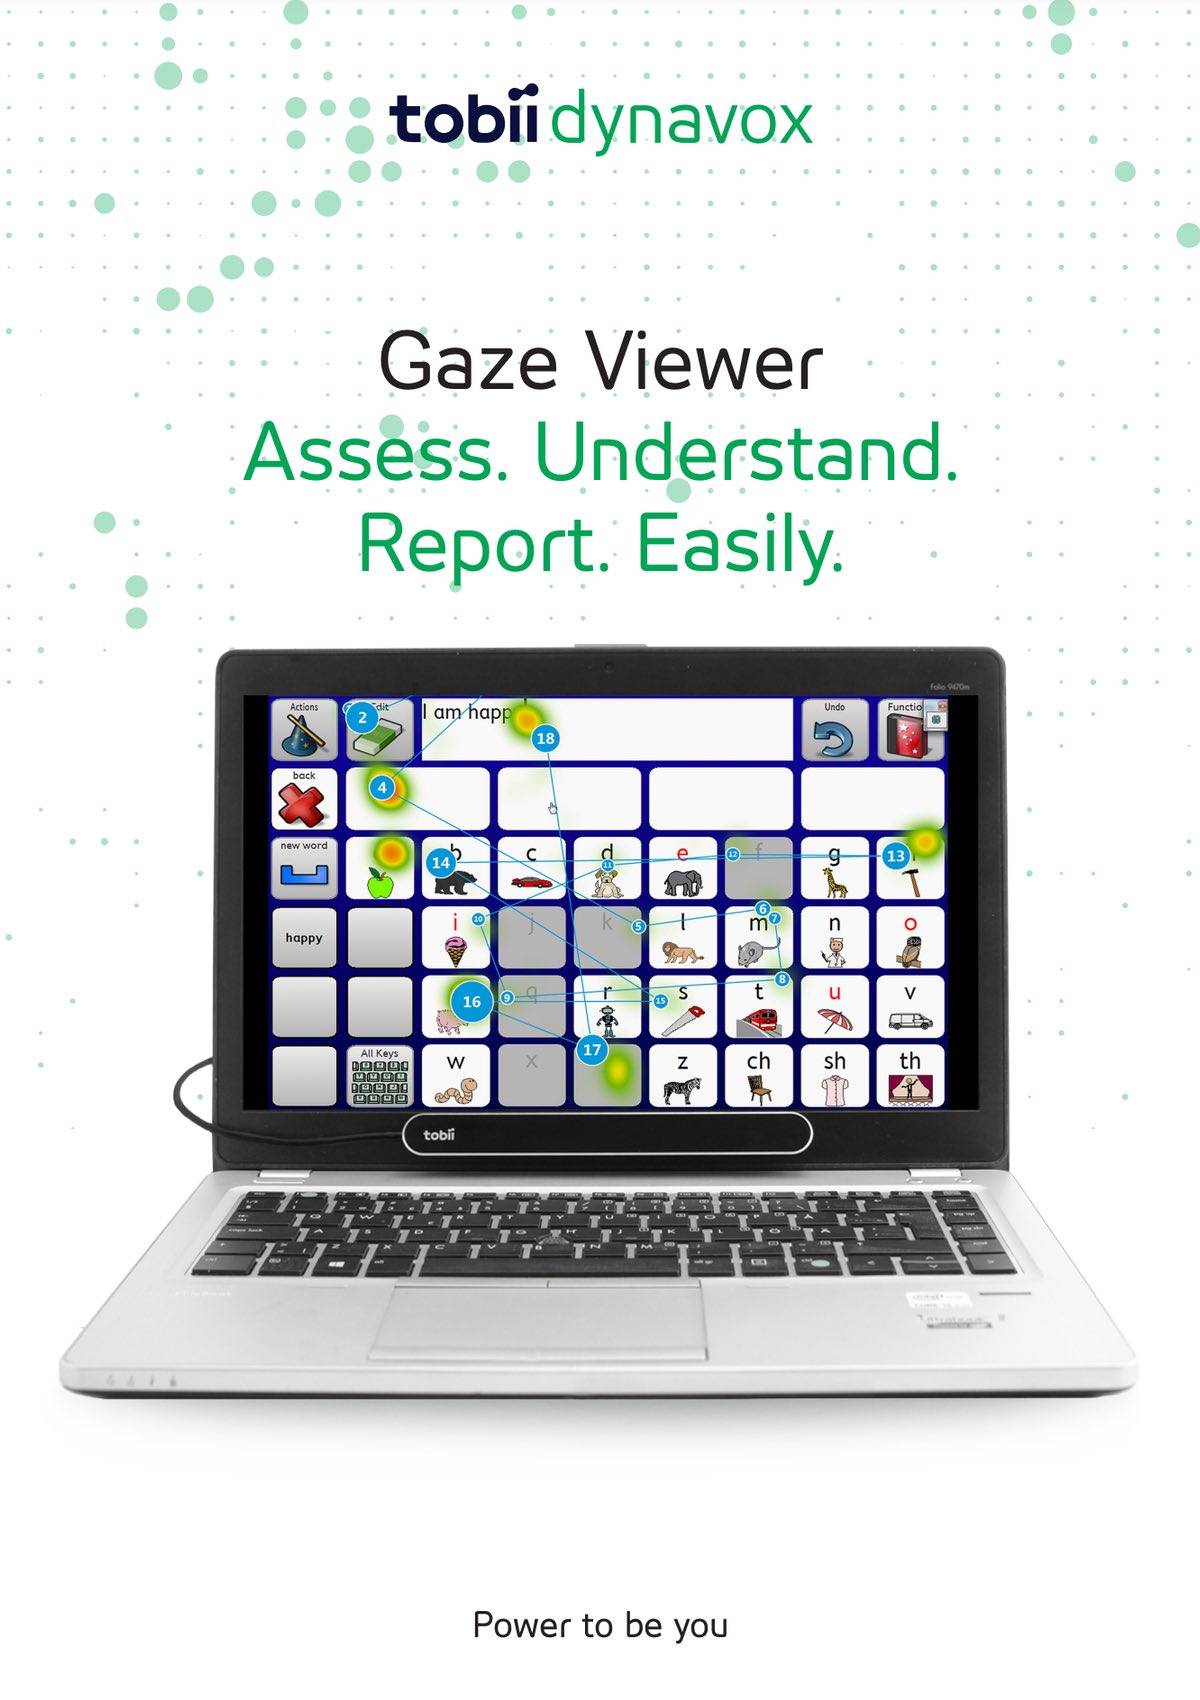 Gaze Viewer brochure cover